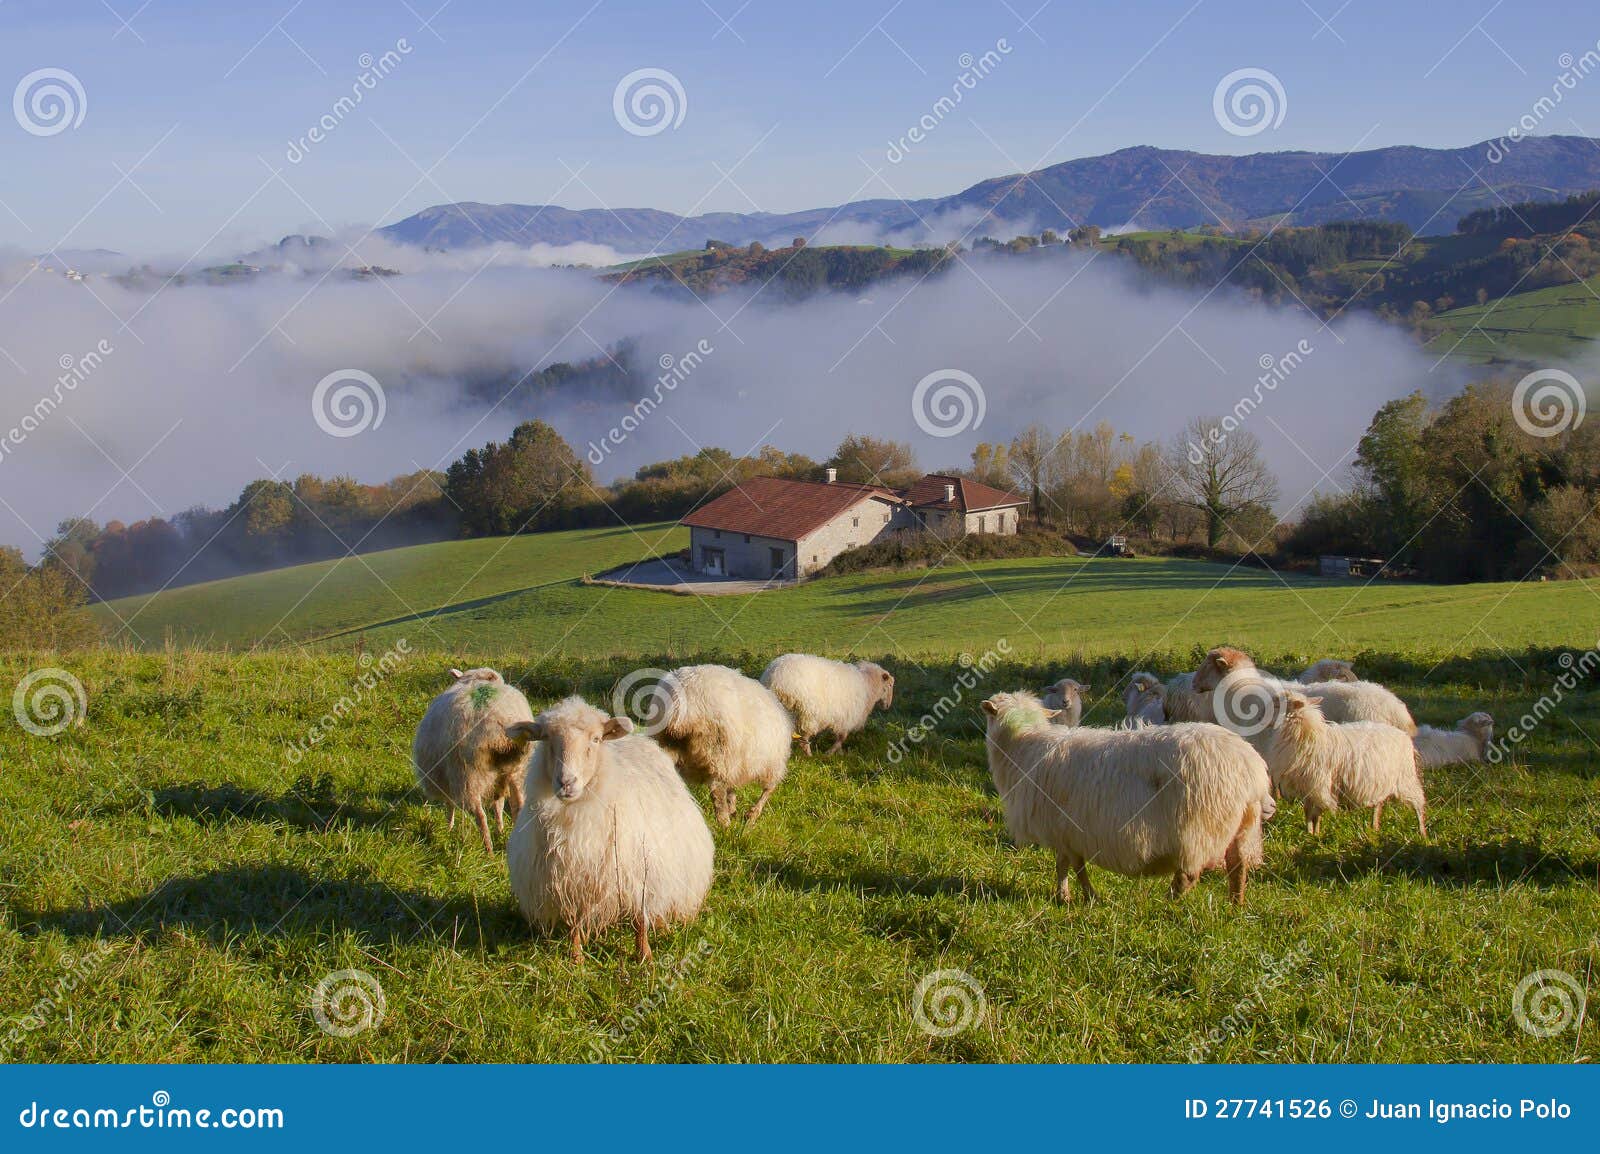 sheep in gainza, gipuzkoa